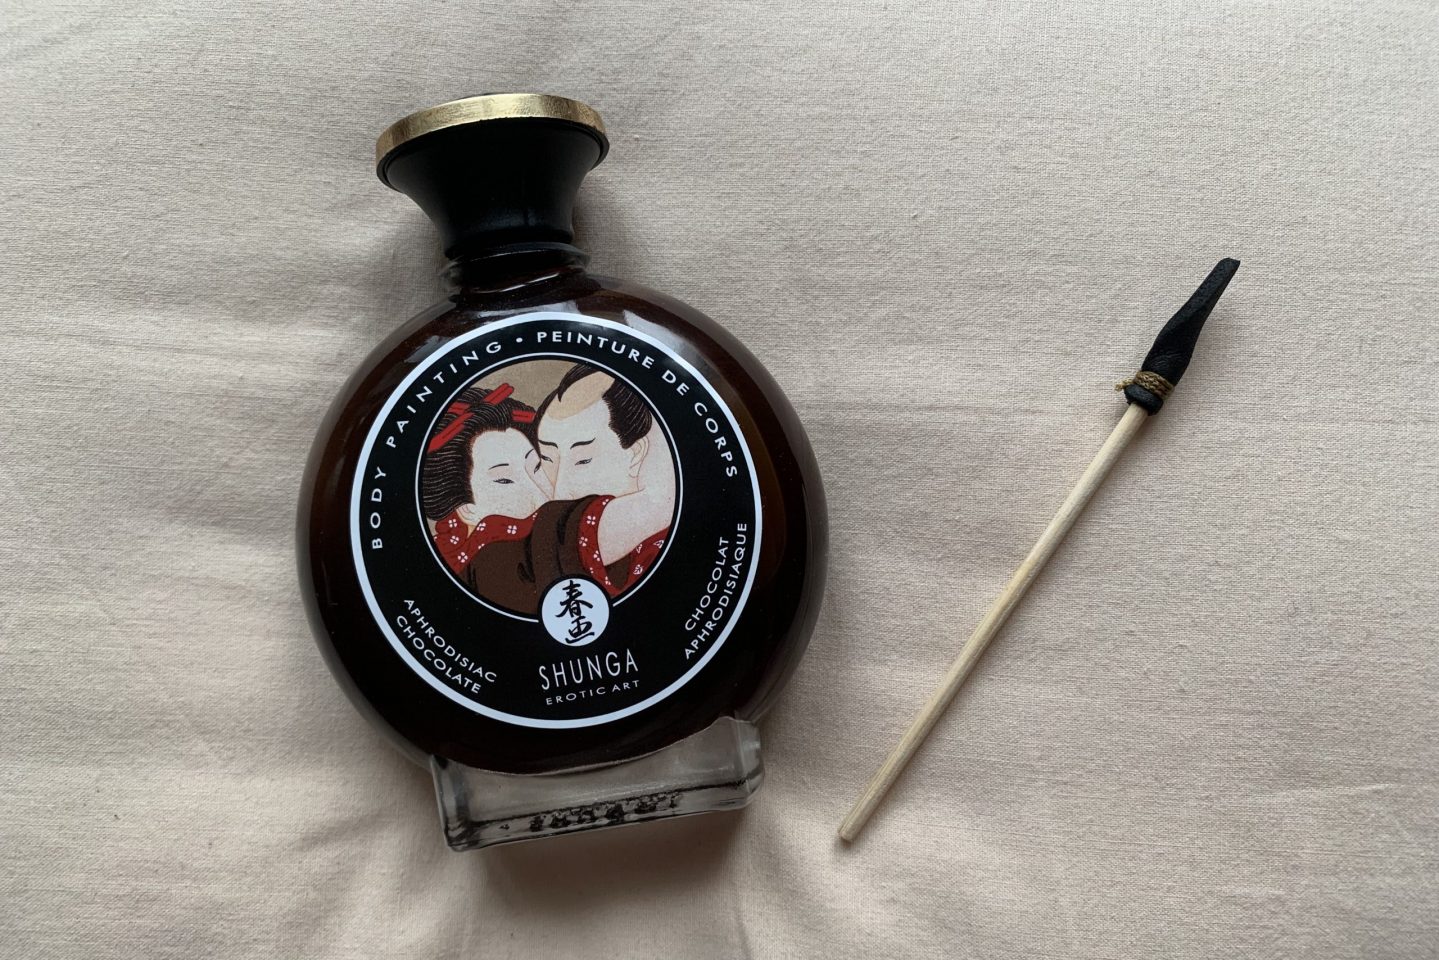 Косметика из секс-шопа. Декоративная крем-краска для тела с ароматом шоколада от Shunga